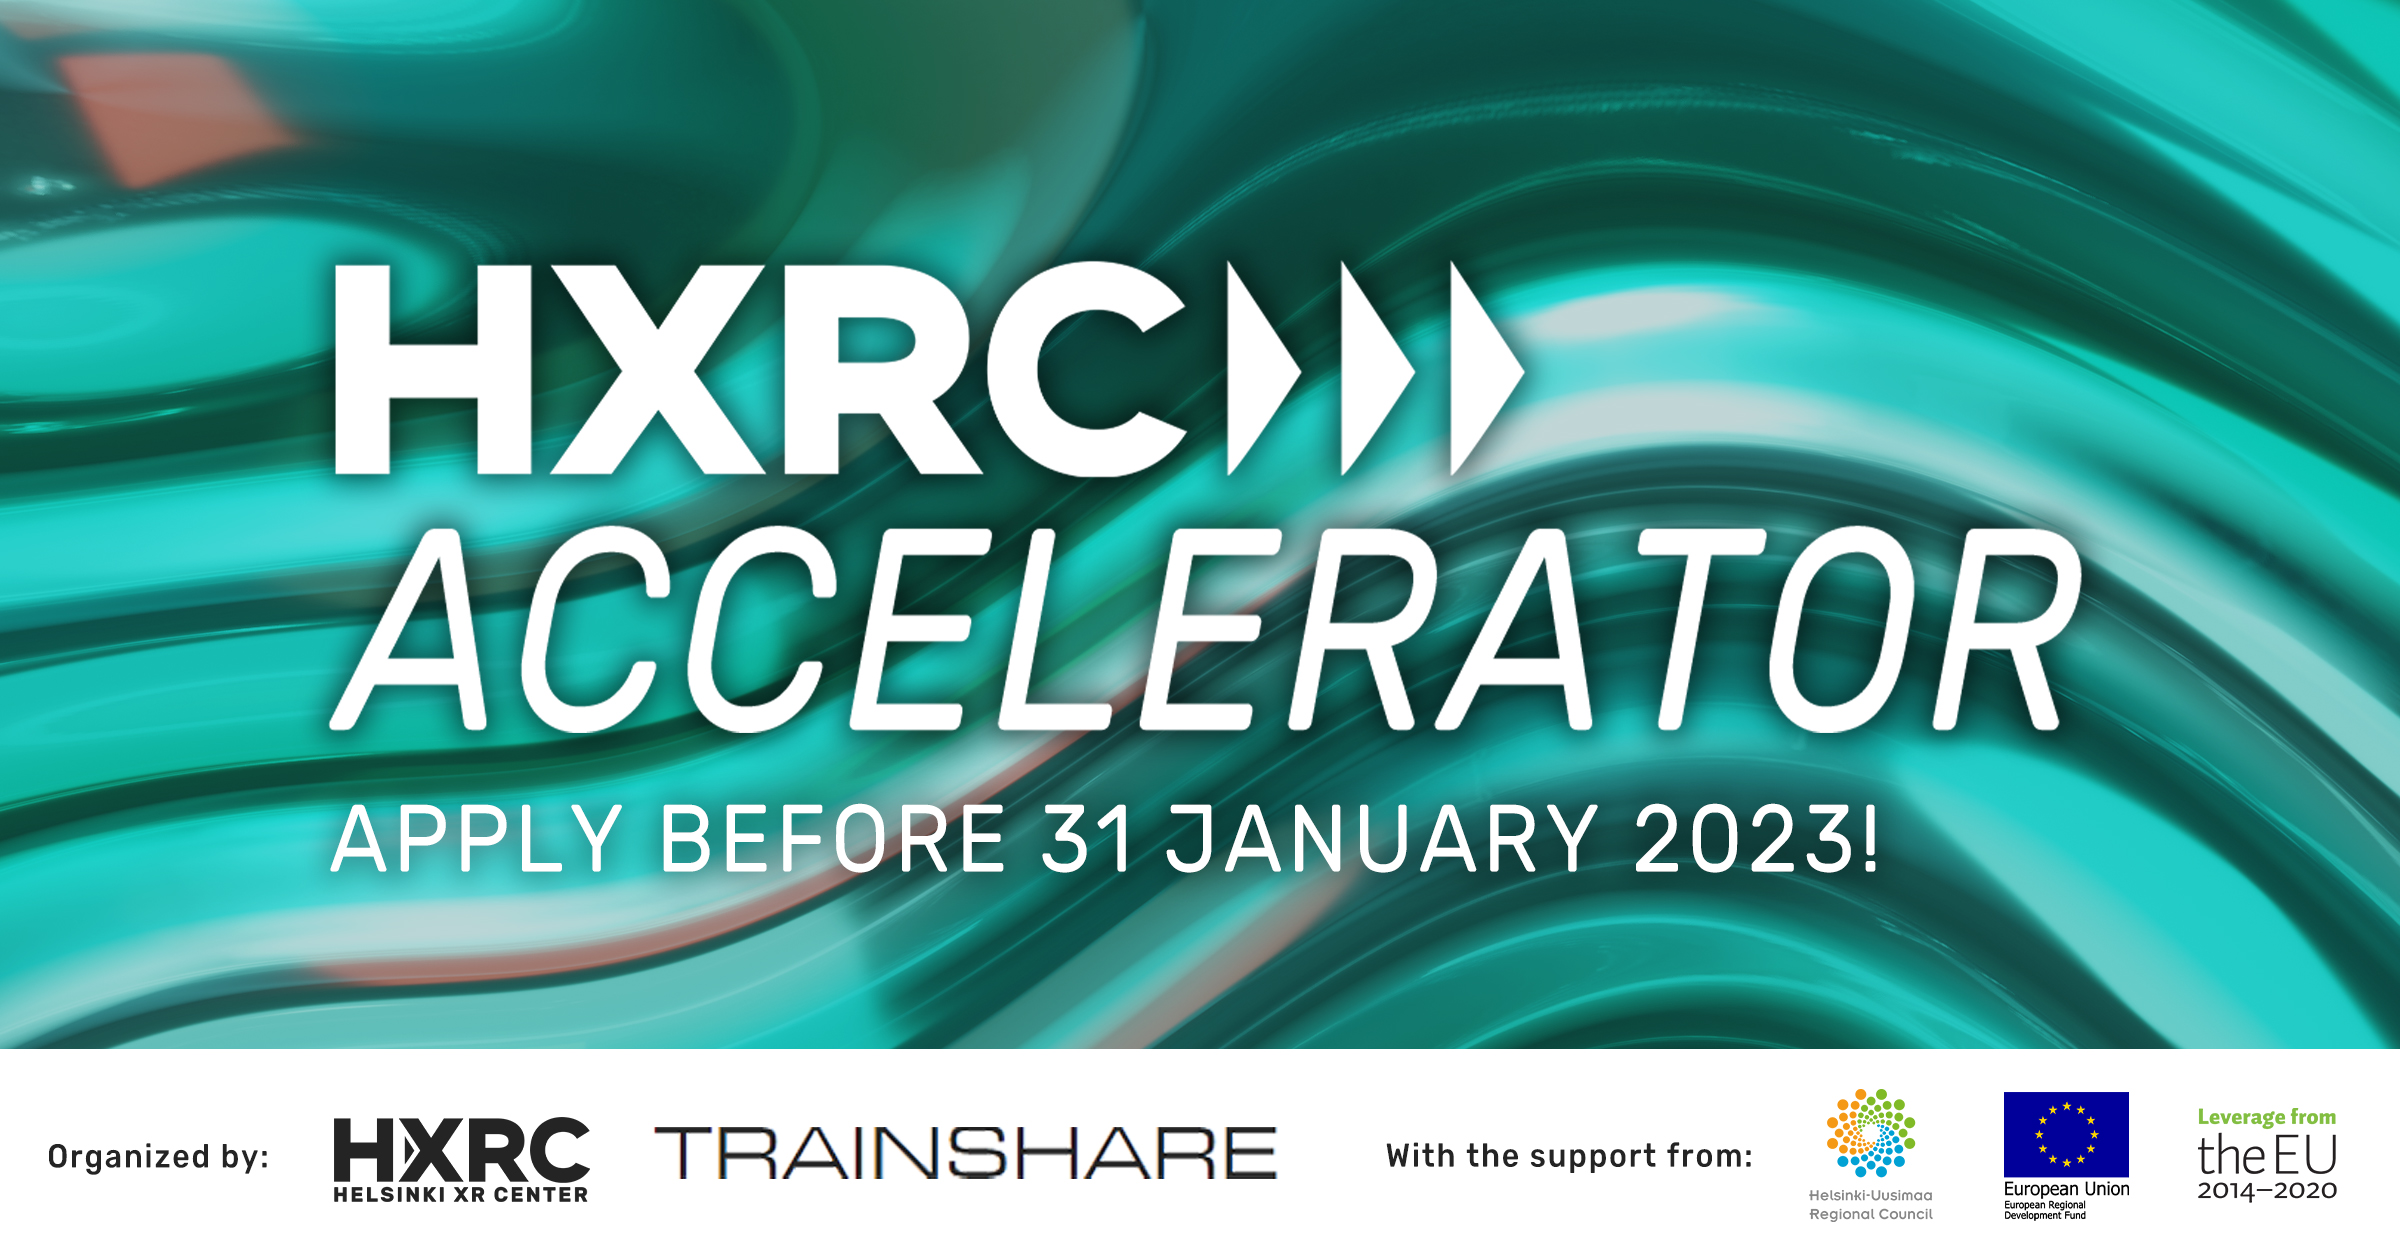 Helsinki XR Center's XR Accelerator program, apply before 31 January 2023.